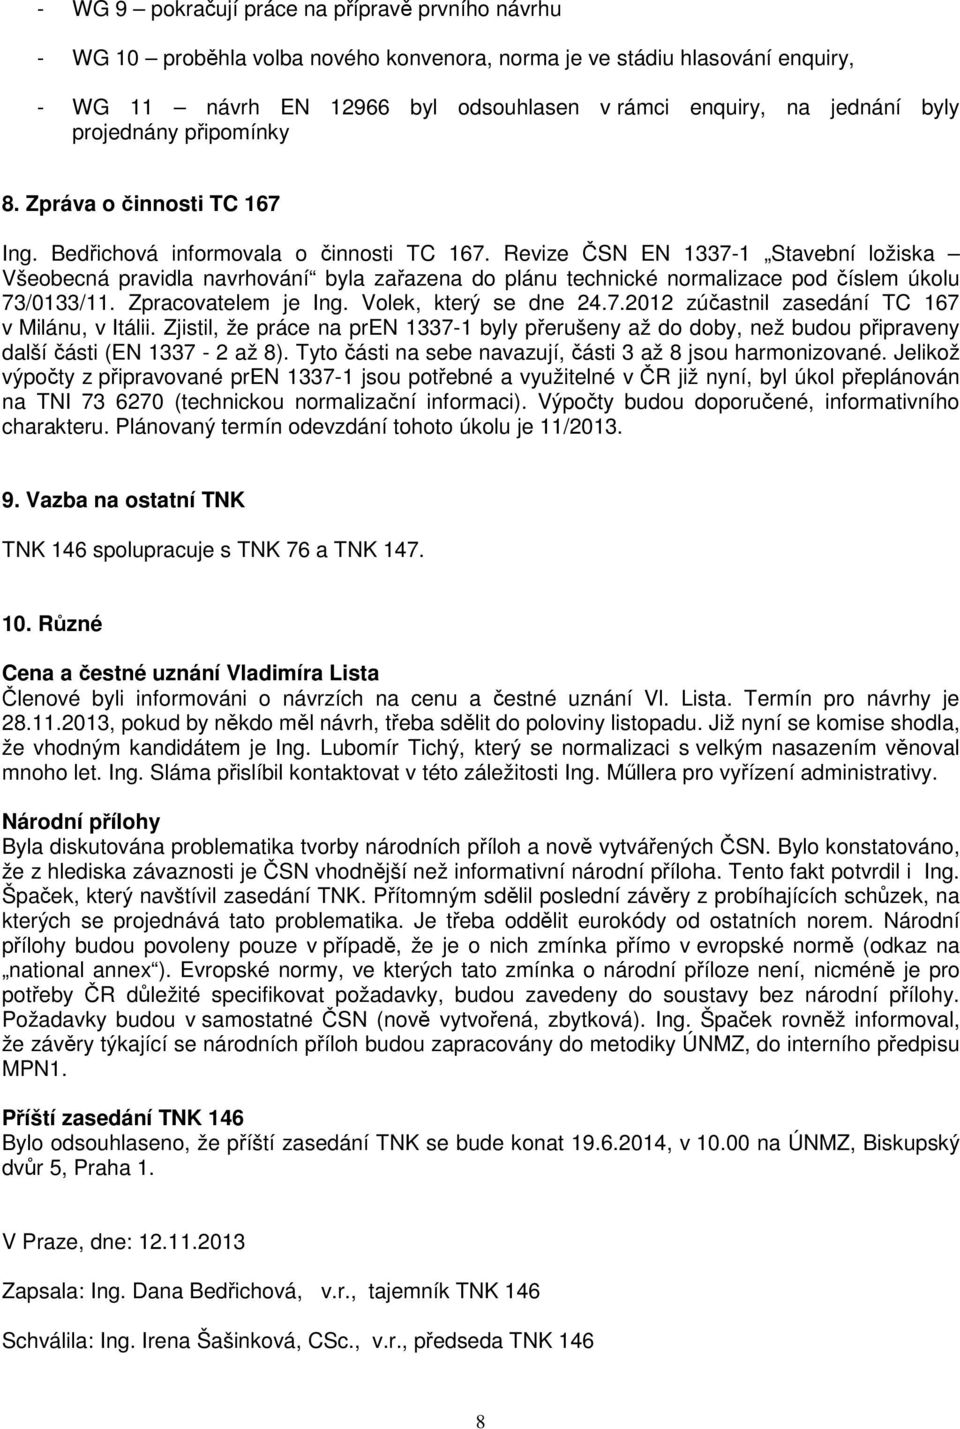 Revize ČSN EN 1337-1 Stavební ložiska Všeobecná pravidla navrhování byla zařazena do plánu technické normalizace pod číslem úkolu 73/0133/11. Zpracovatelem je Ing. Volek, který se dne 24.7.2012 zúčastnil zasedání TC 167 v Milánu, v Itálii.